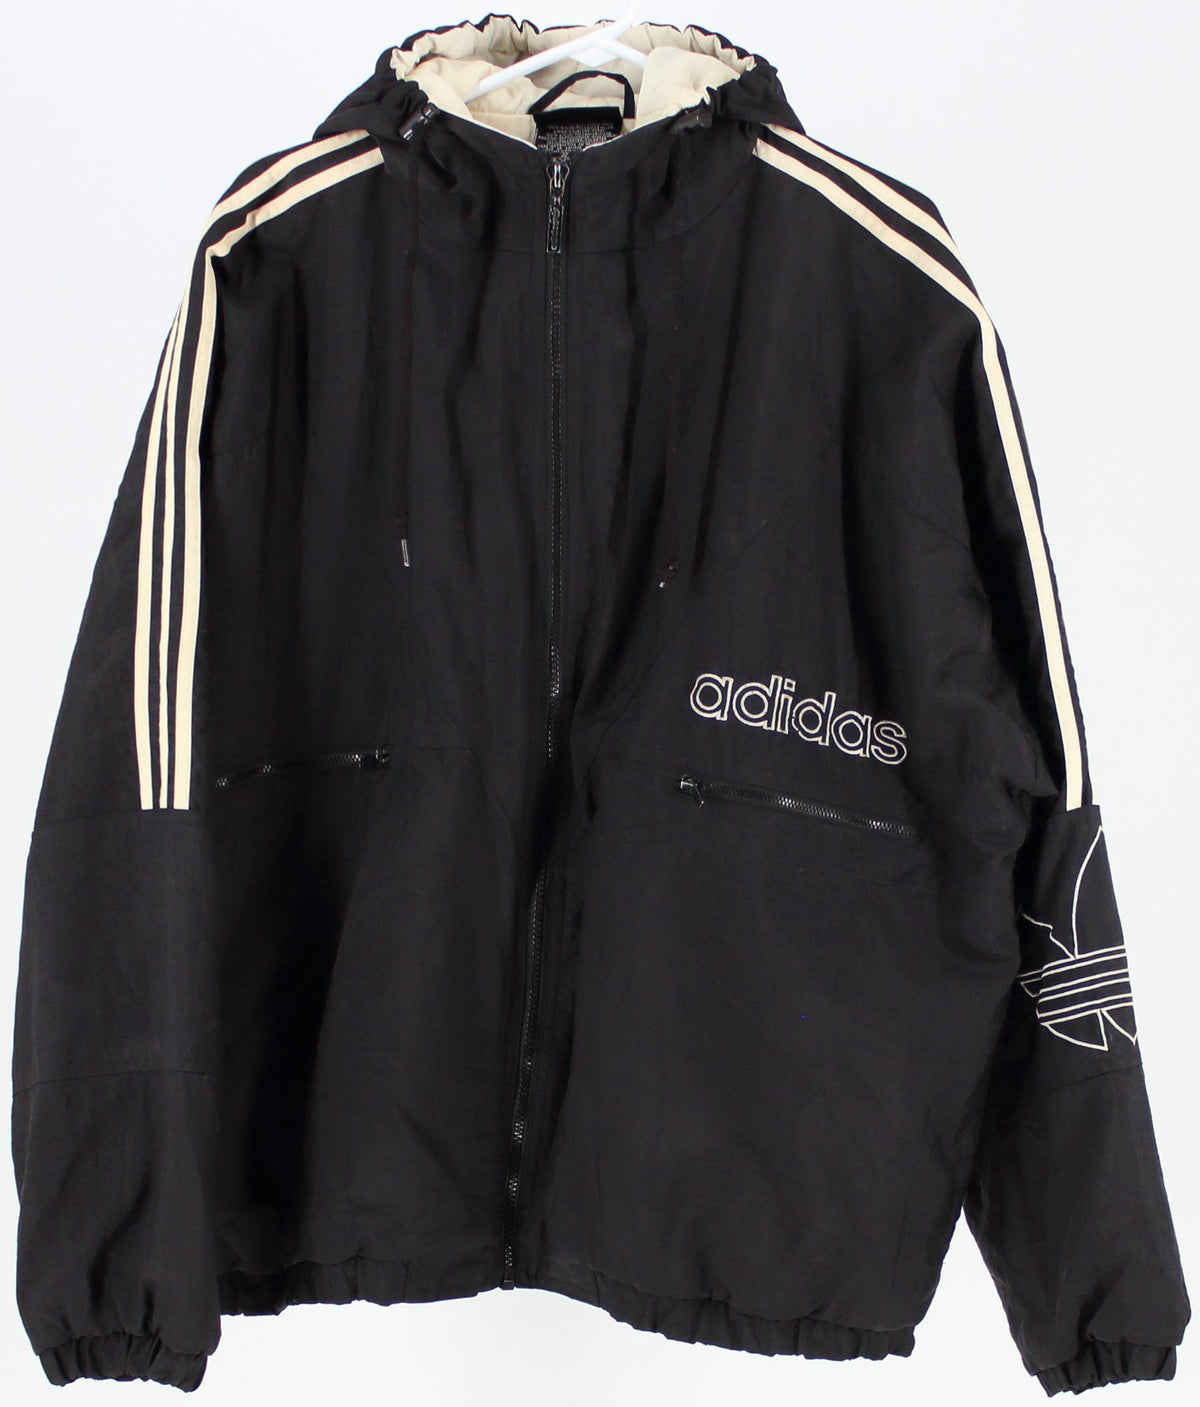 Adidas Black and Cream Nylon Jacket